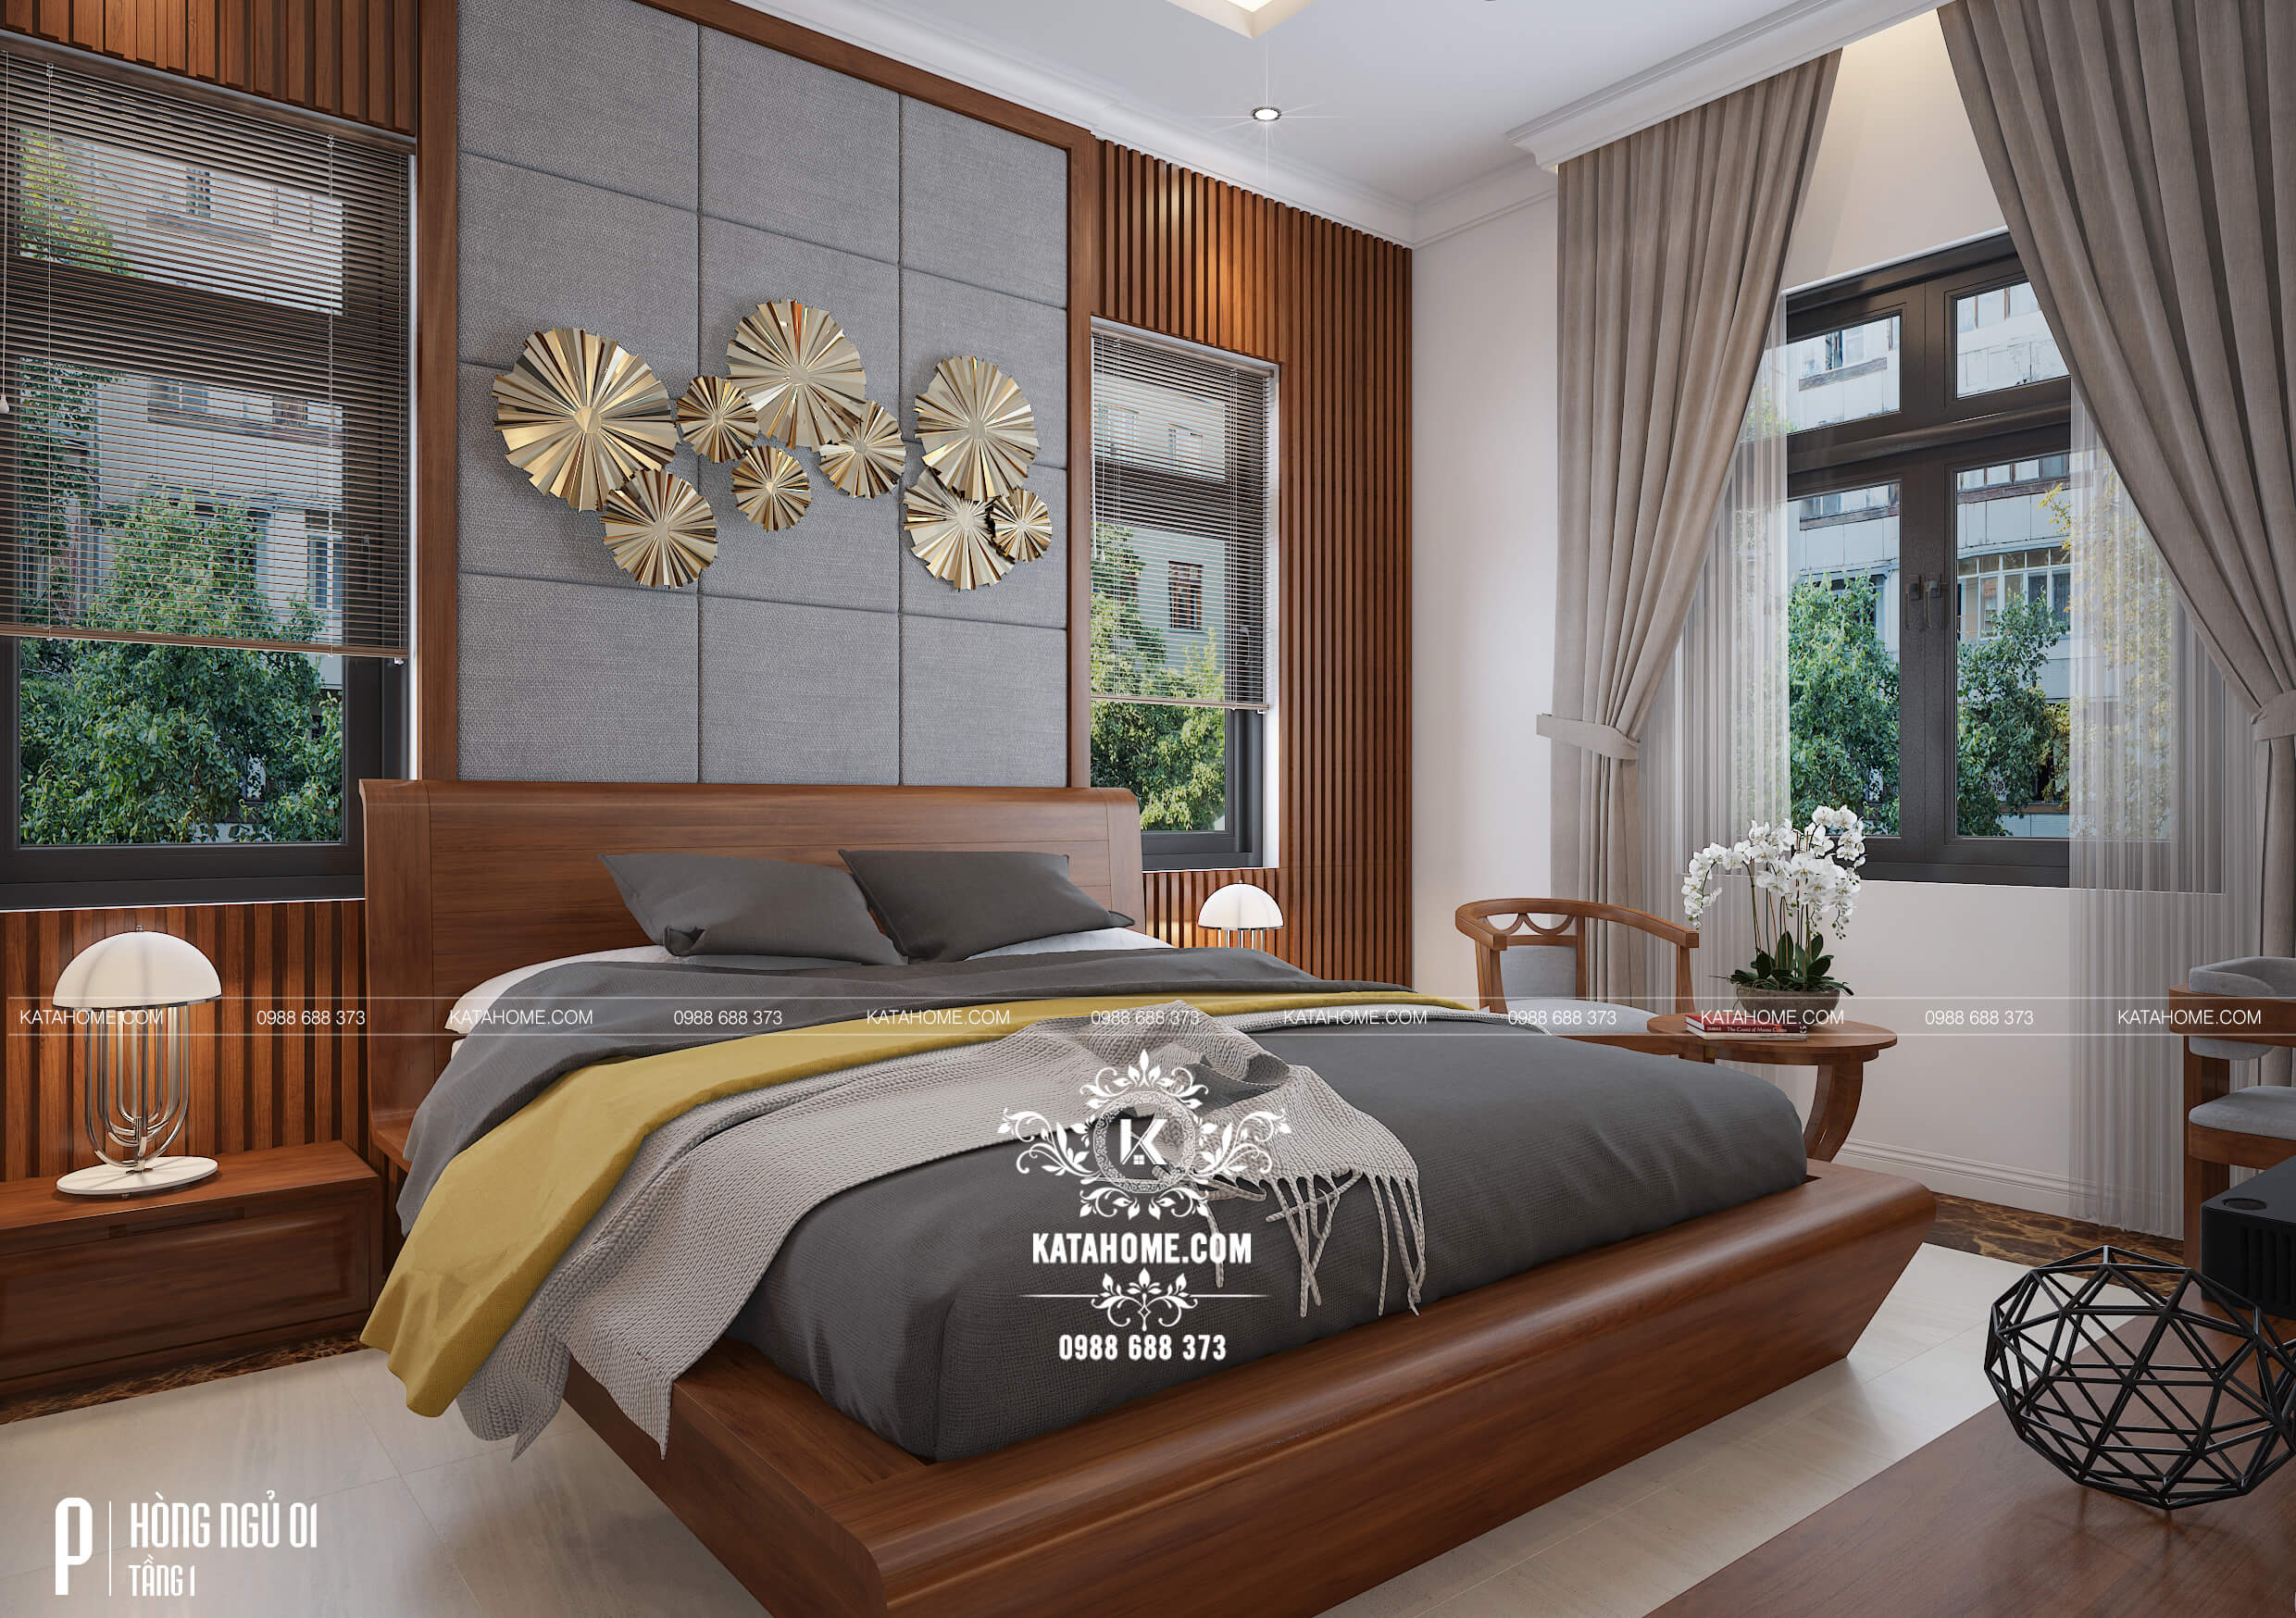 Phối cảnh 3D phòng ngủ đẹp, sang trọng của biệt thự hiện đại mái Thái tại An Giang